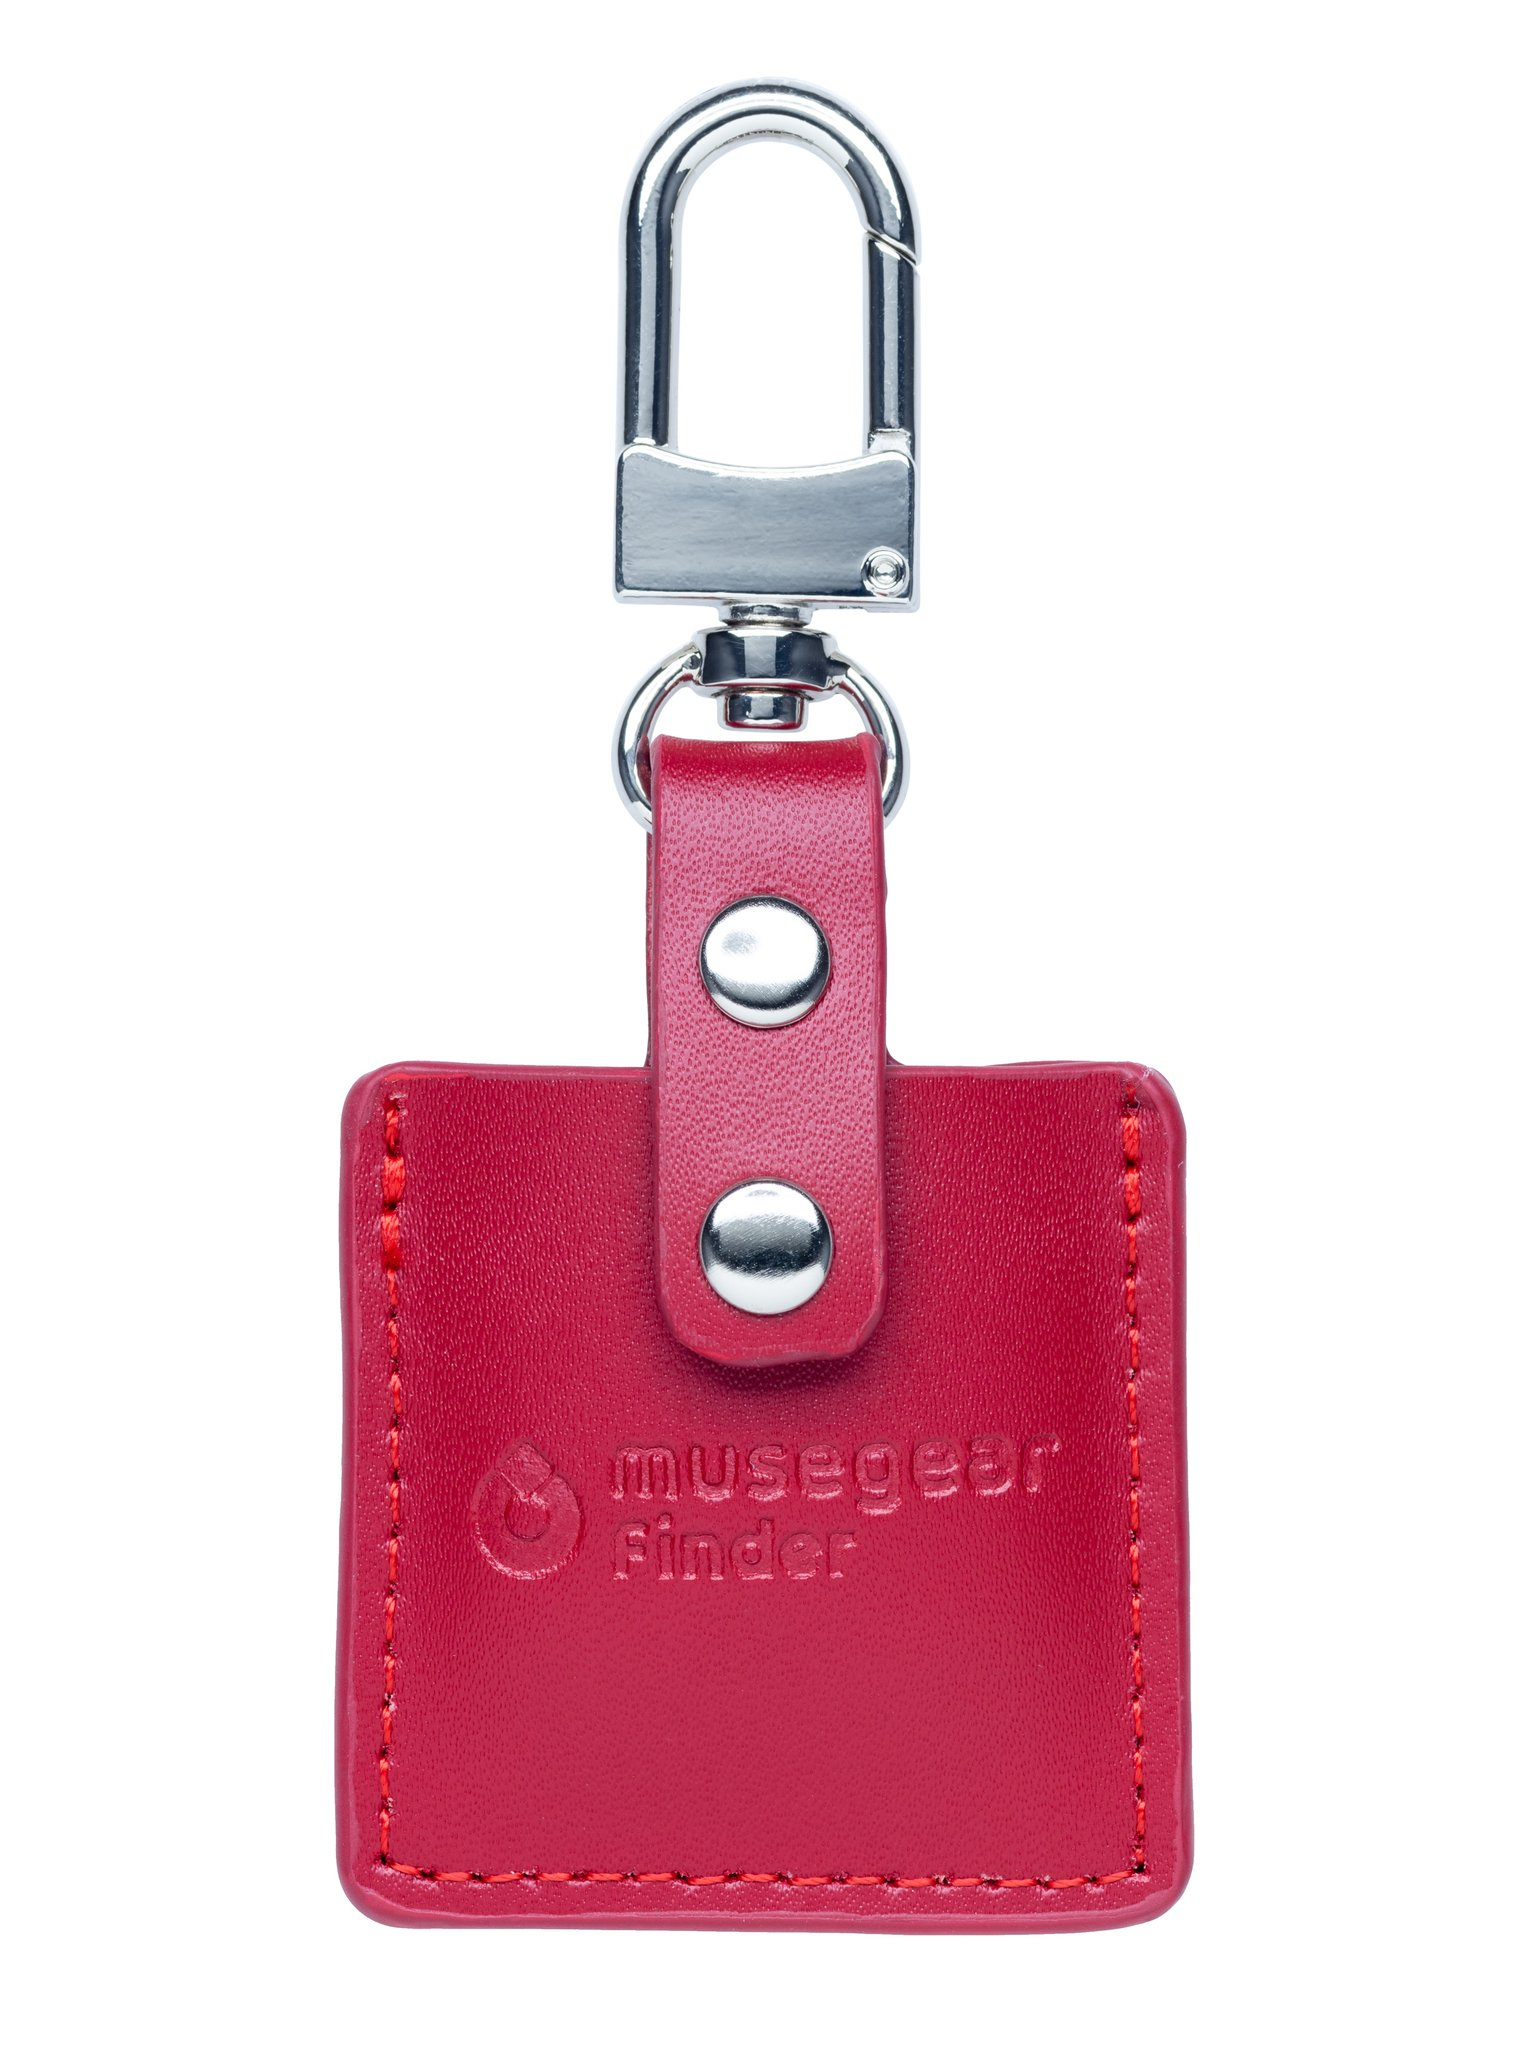 MUSEGEAR Schlüsselfinder Deutschland Bluetooth Schlüsselfinder mit App aus Bluetooth